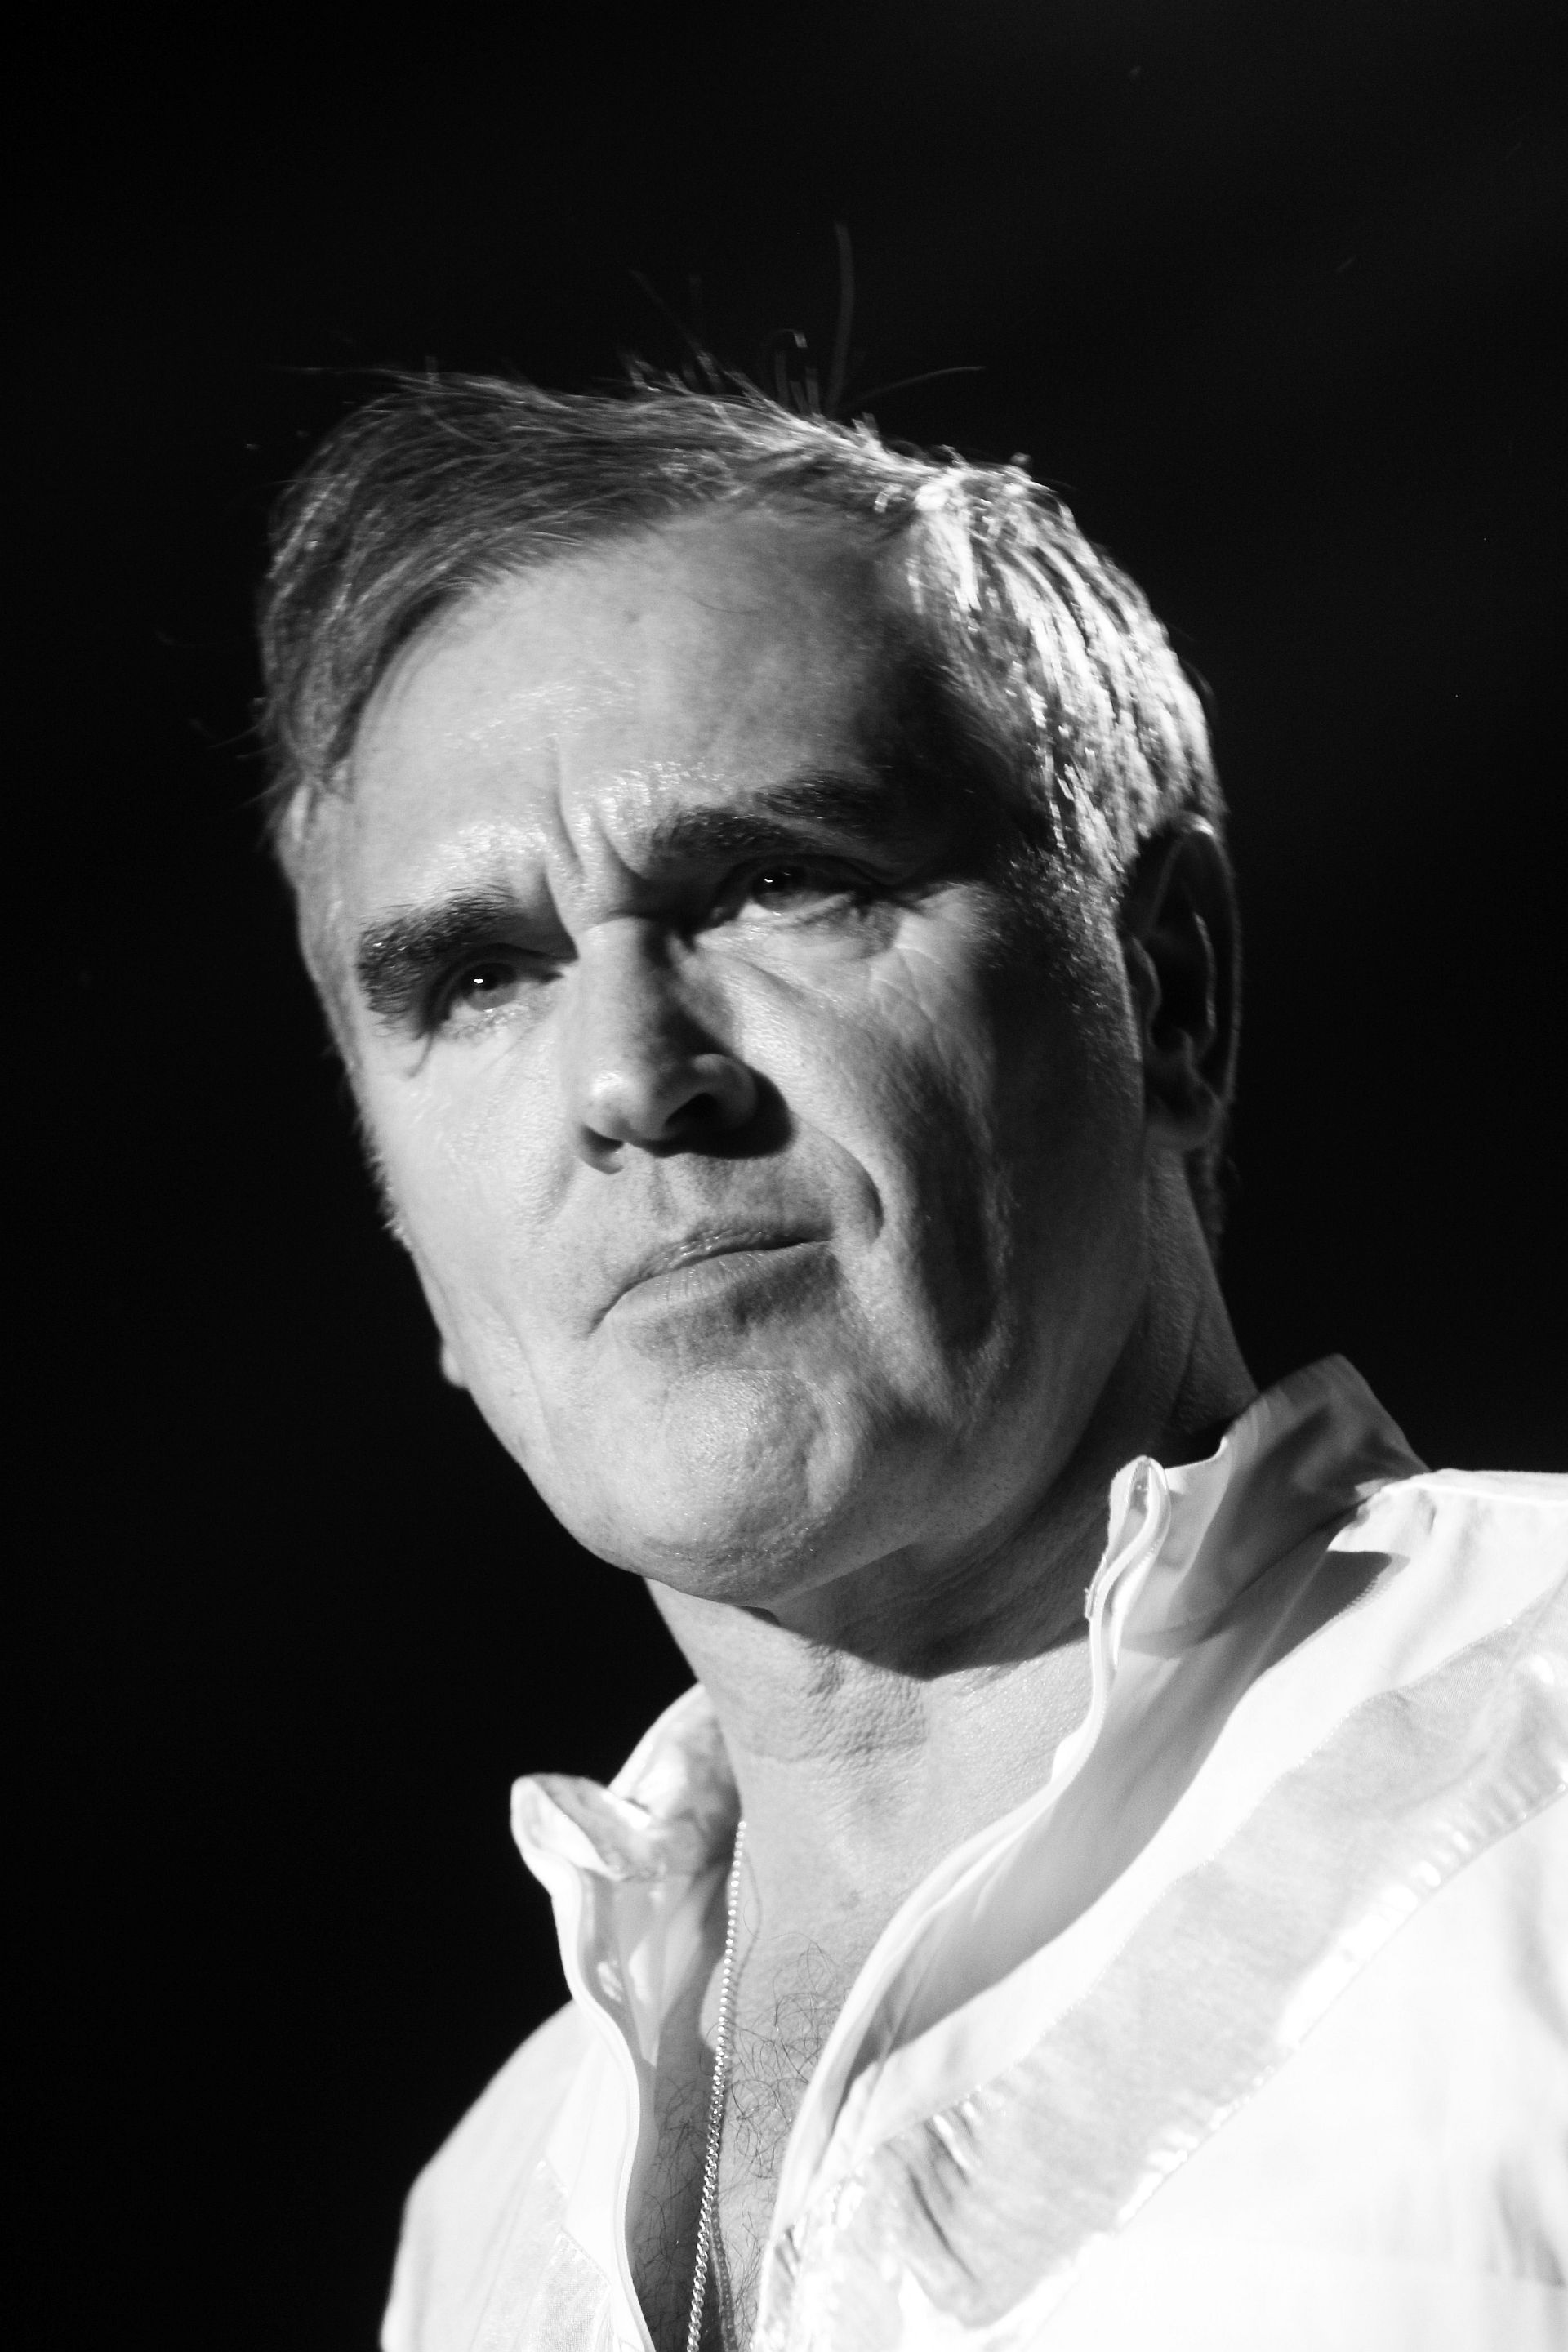 Morrissey live in Köln, 01.10.2015.